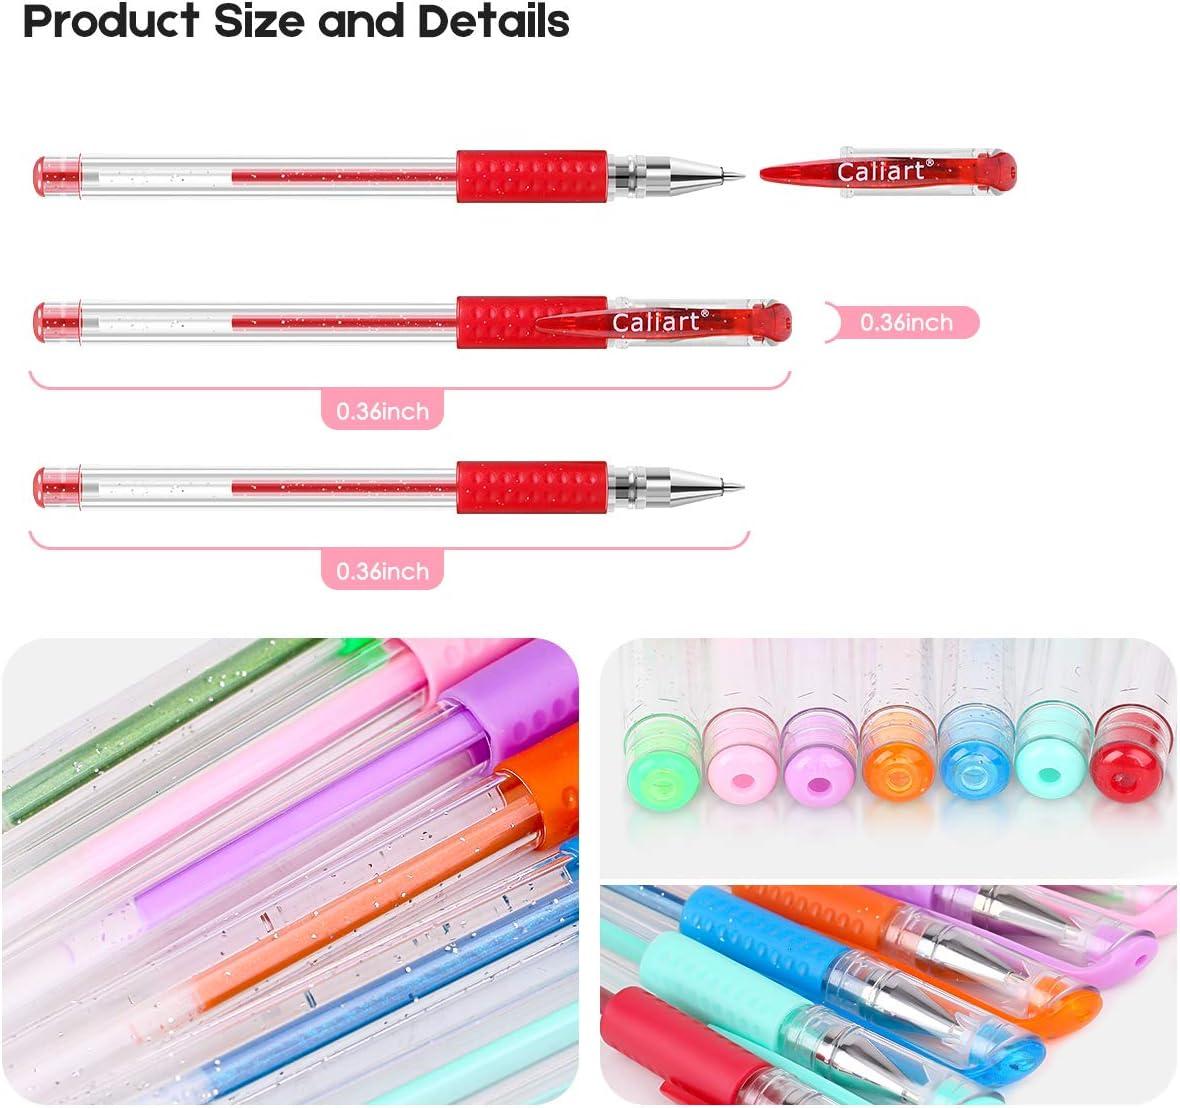 Glitter Gel Pens, 32-Color Neon Glitter Pens Fine Tip Art Markers Set 40%  More Ink Colored Gel Pens for Adult Coloring Book, Drawing, Doodling,  Scrapbook, Bullet Journal, Sparkle Gel Pen Gift for